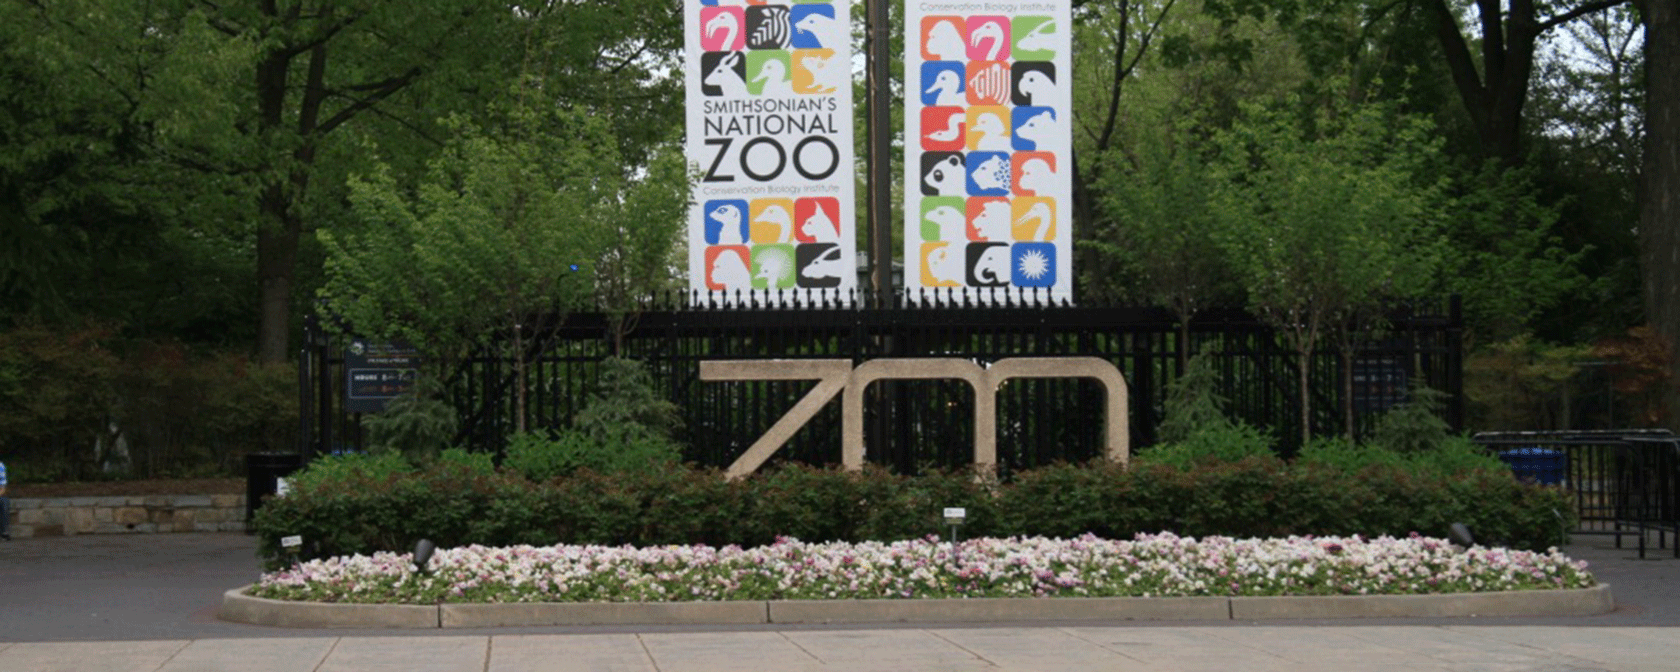 伍德利公園的動物園標誌